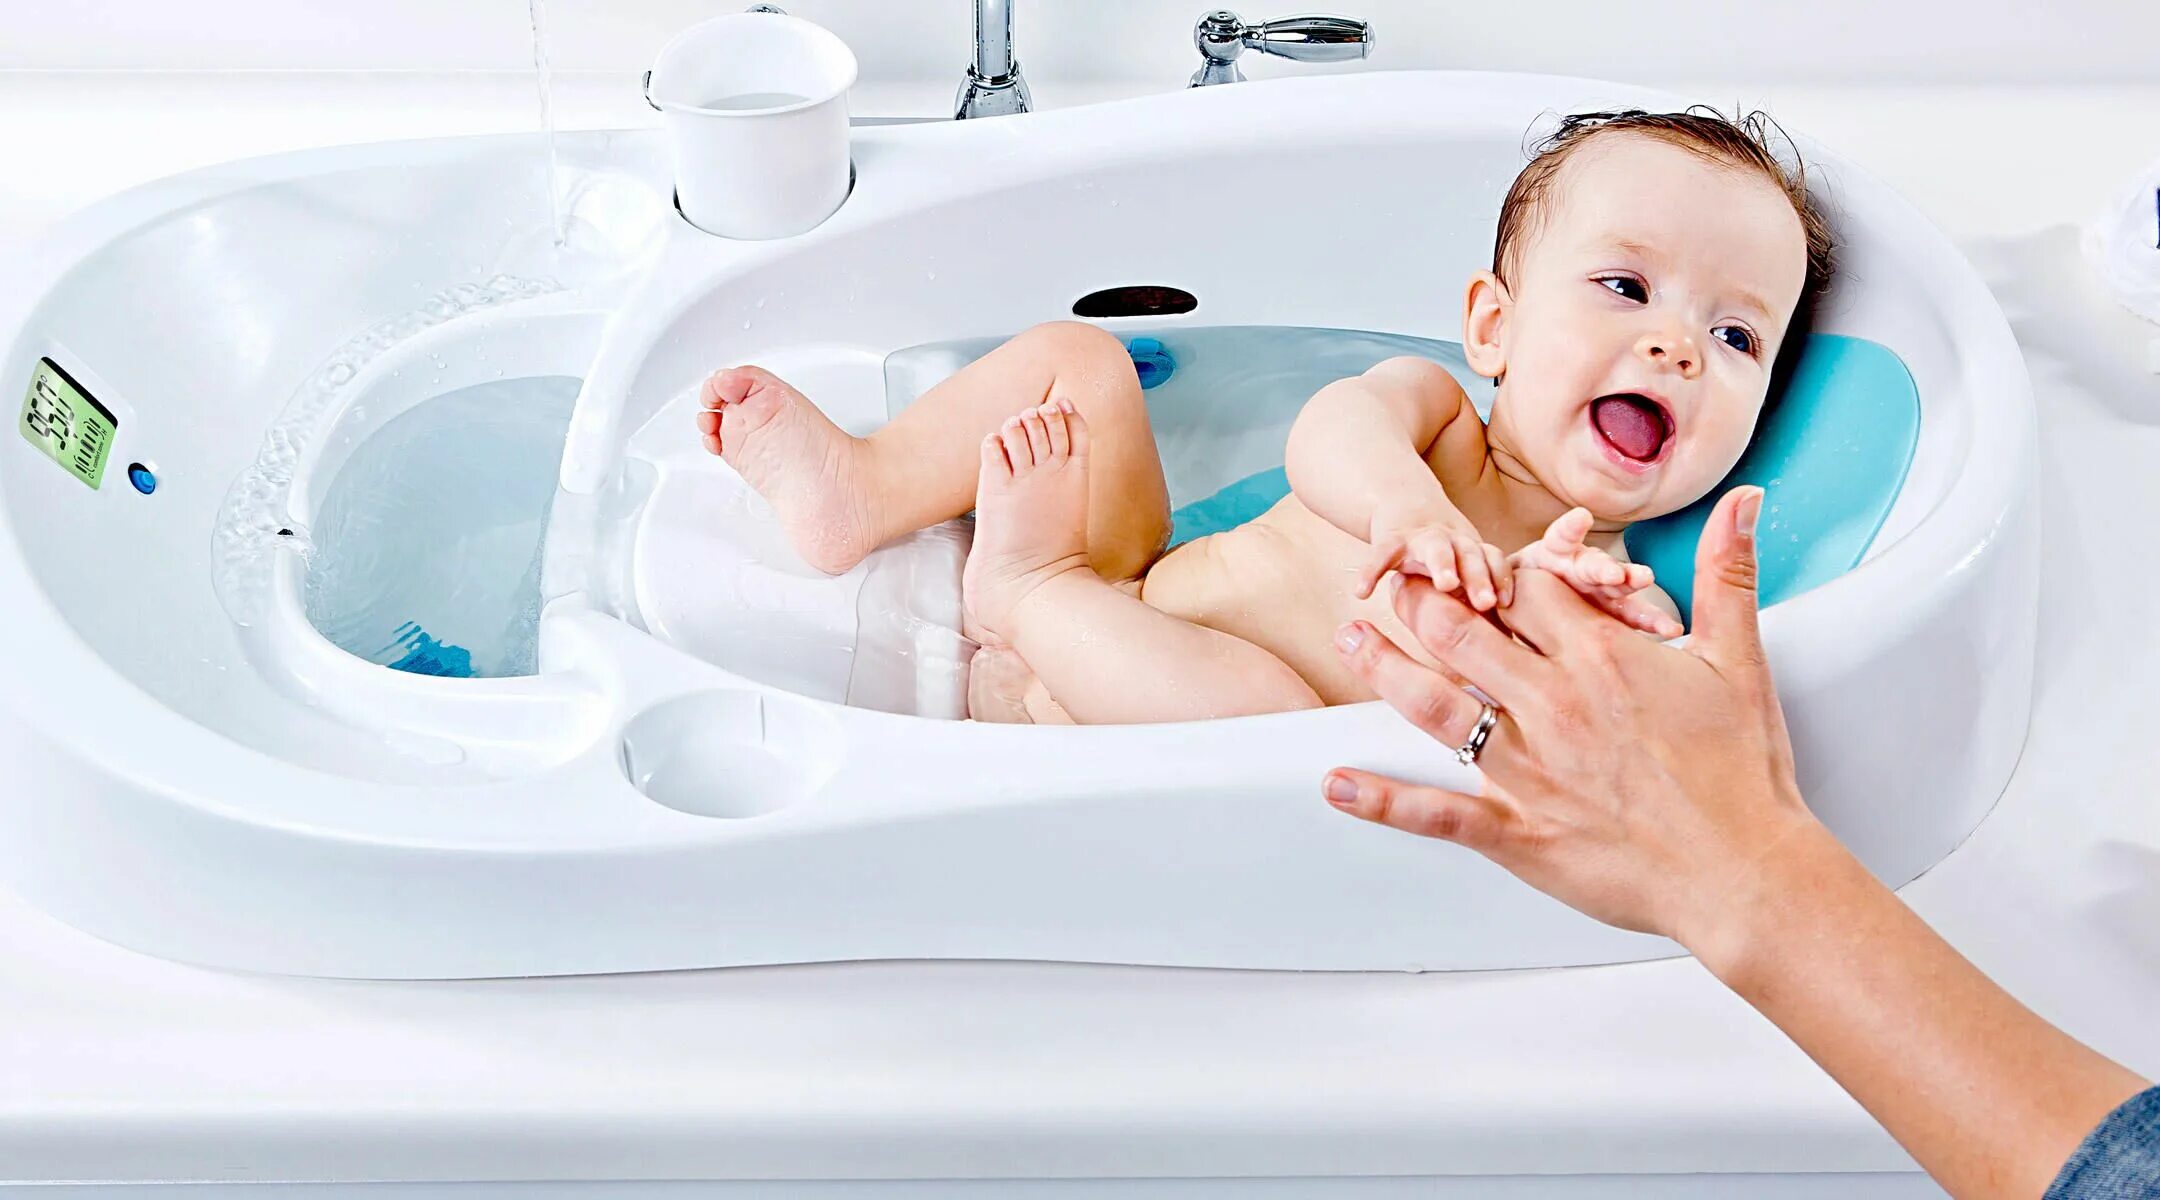 4moms ванночка для купания. Ванна для младенцев для купания. Раковина для купания младенцев. Гигиенические ванны для новорожденных. Какая температура купания ребенка